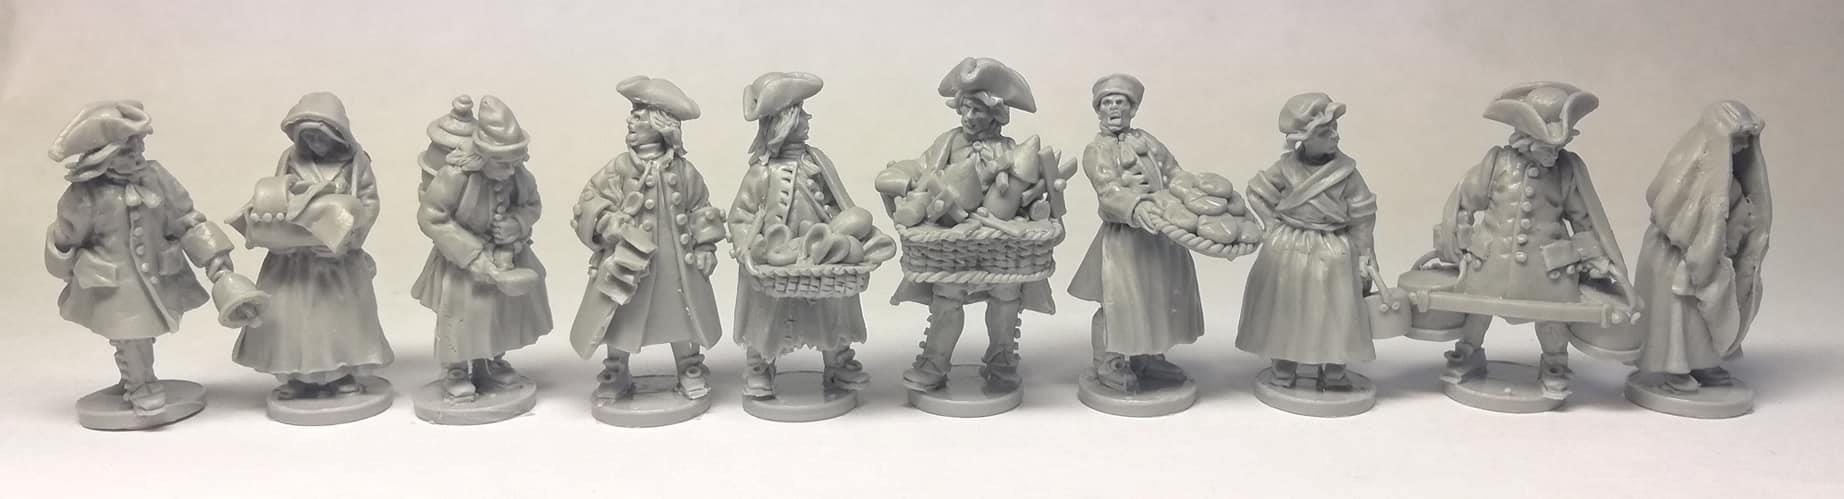 Ratnik Miniatures - 18th Century Civilians #2